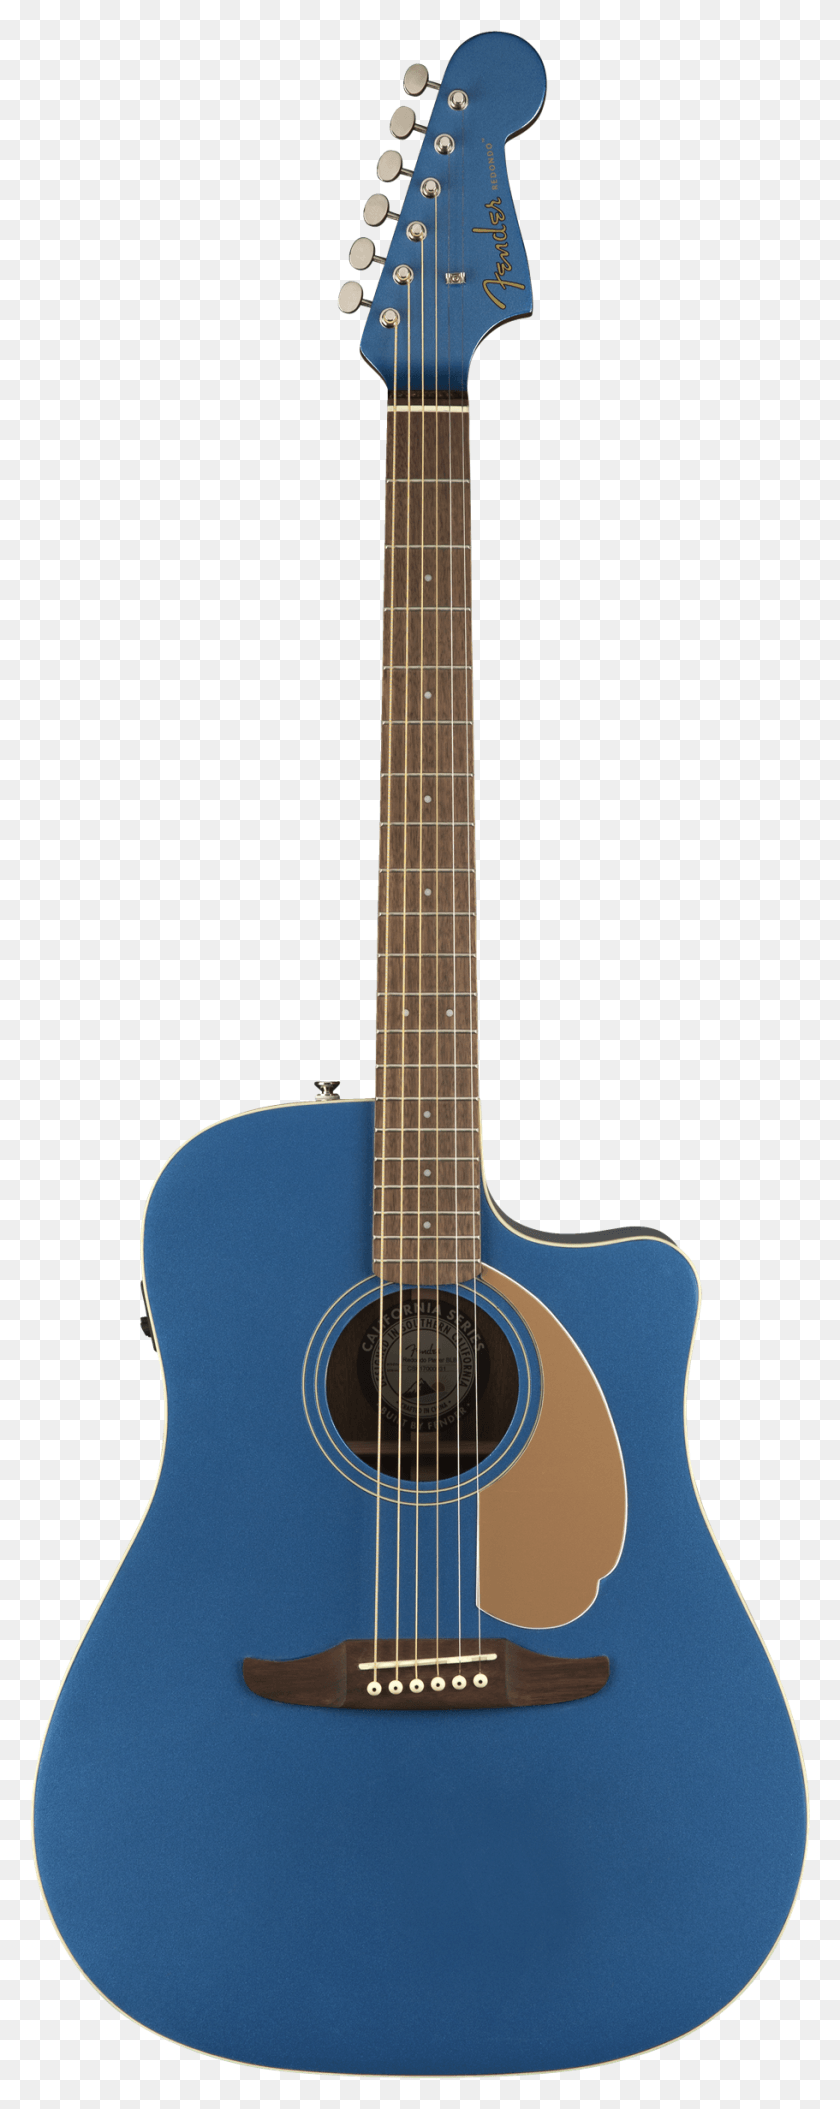 911x2394 Descargar Png X 2400 1 Fender Redondo Player Belmont Blue, Guitarra, Actividades De Ocio, Instrumento Musical Hd Png